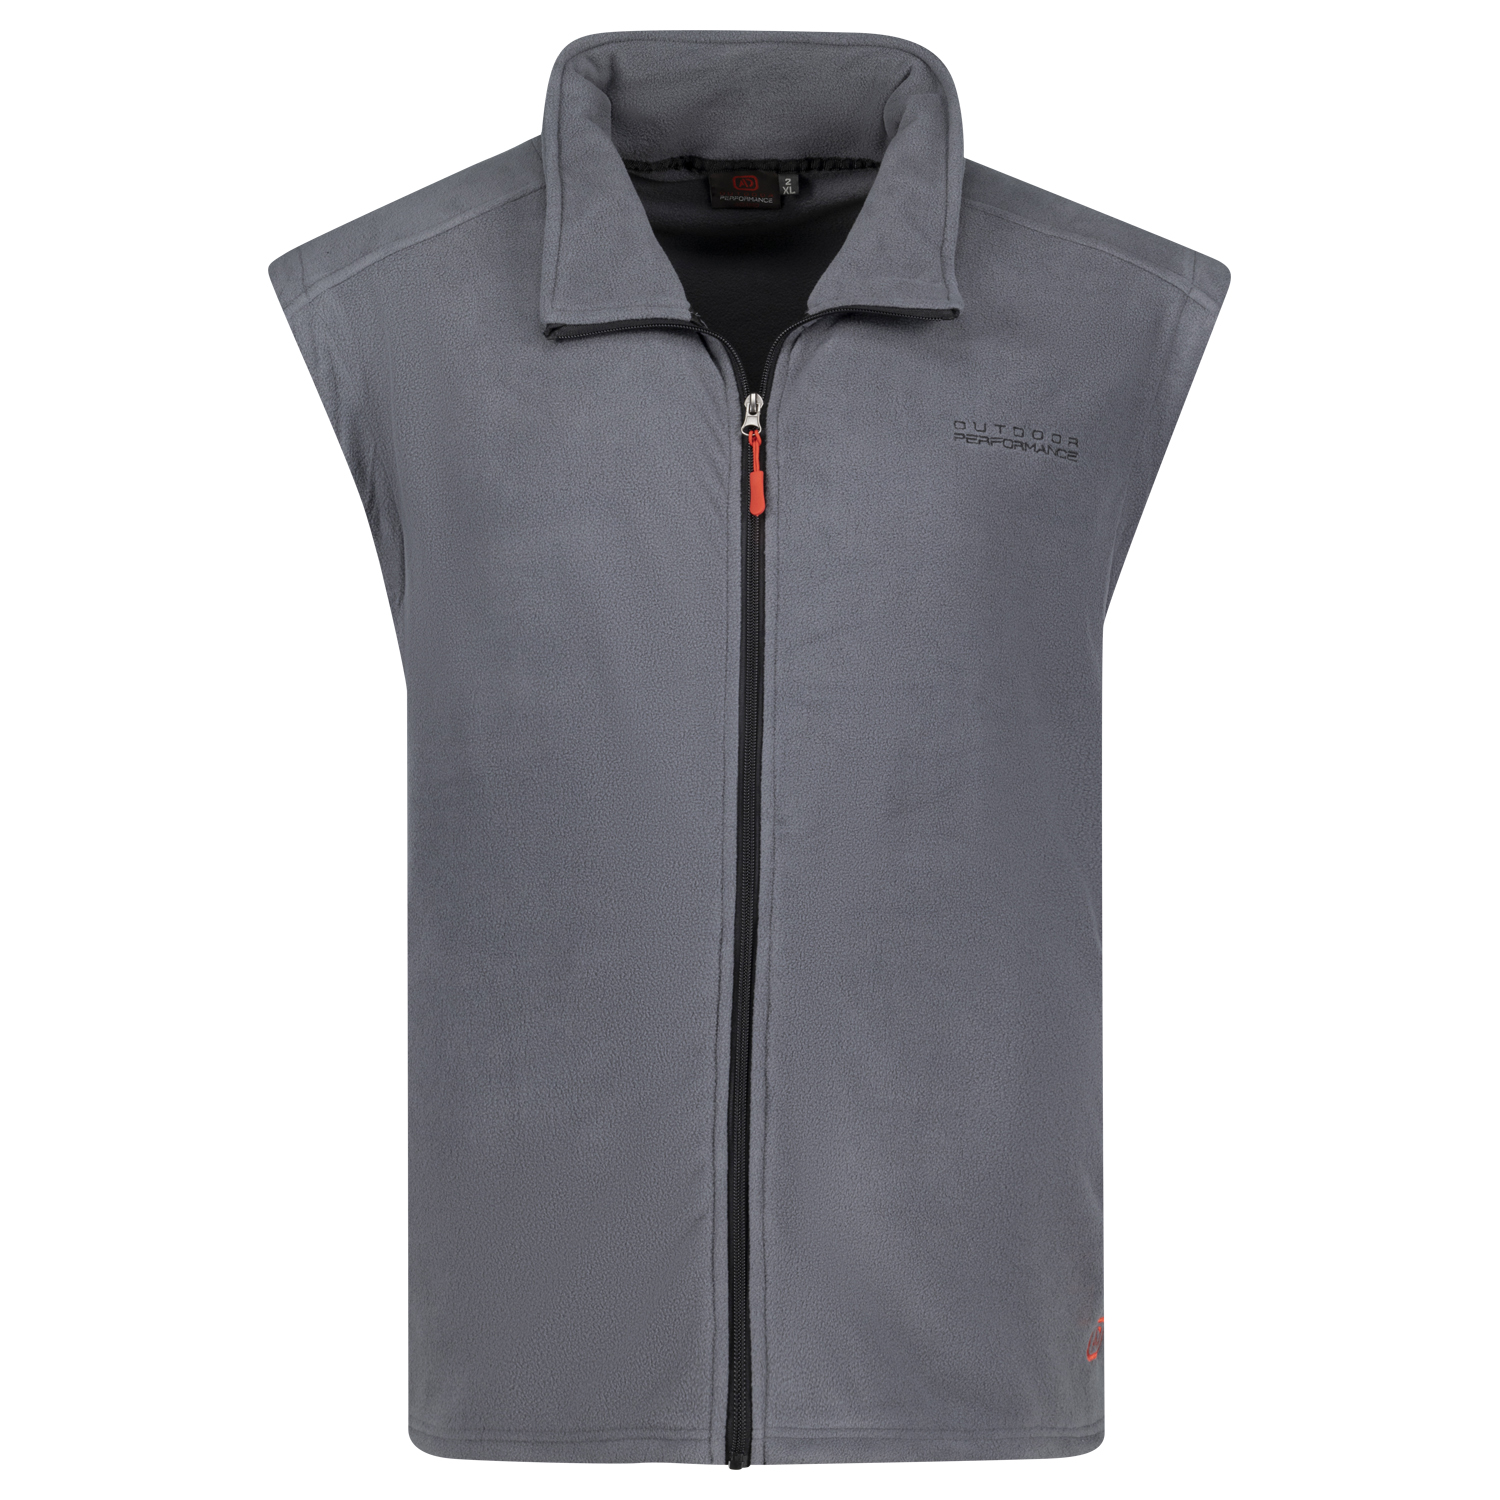 Fleece vest in grey Series Montreal by Adamo up to oversize 12XL